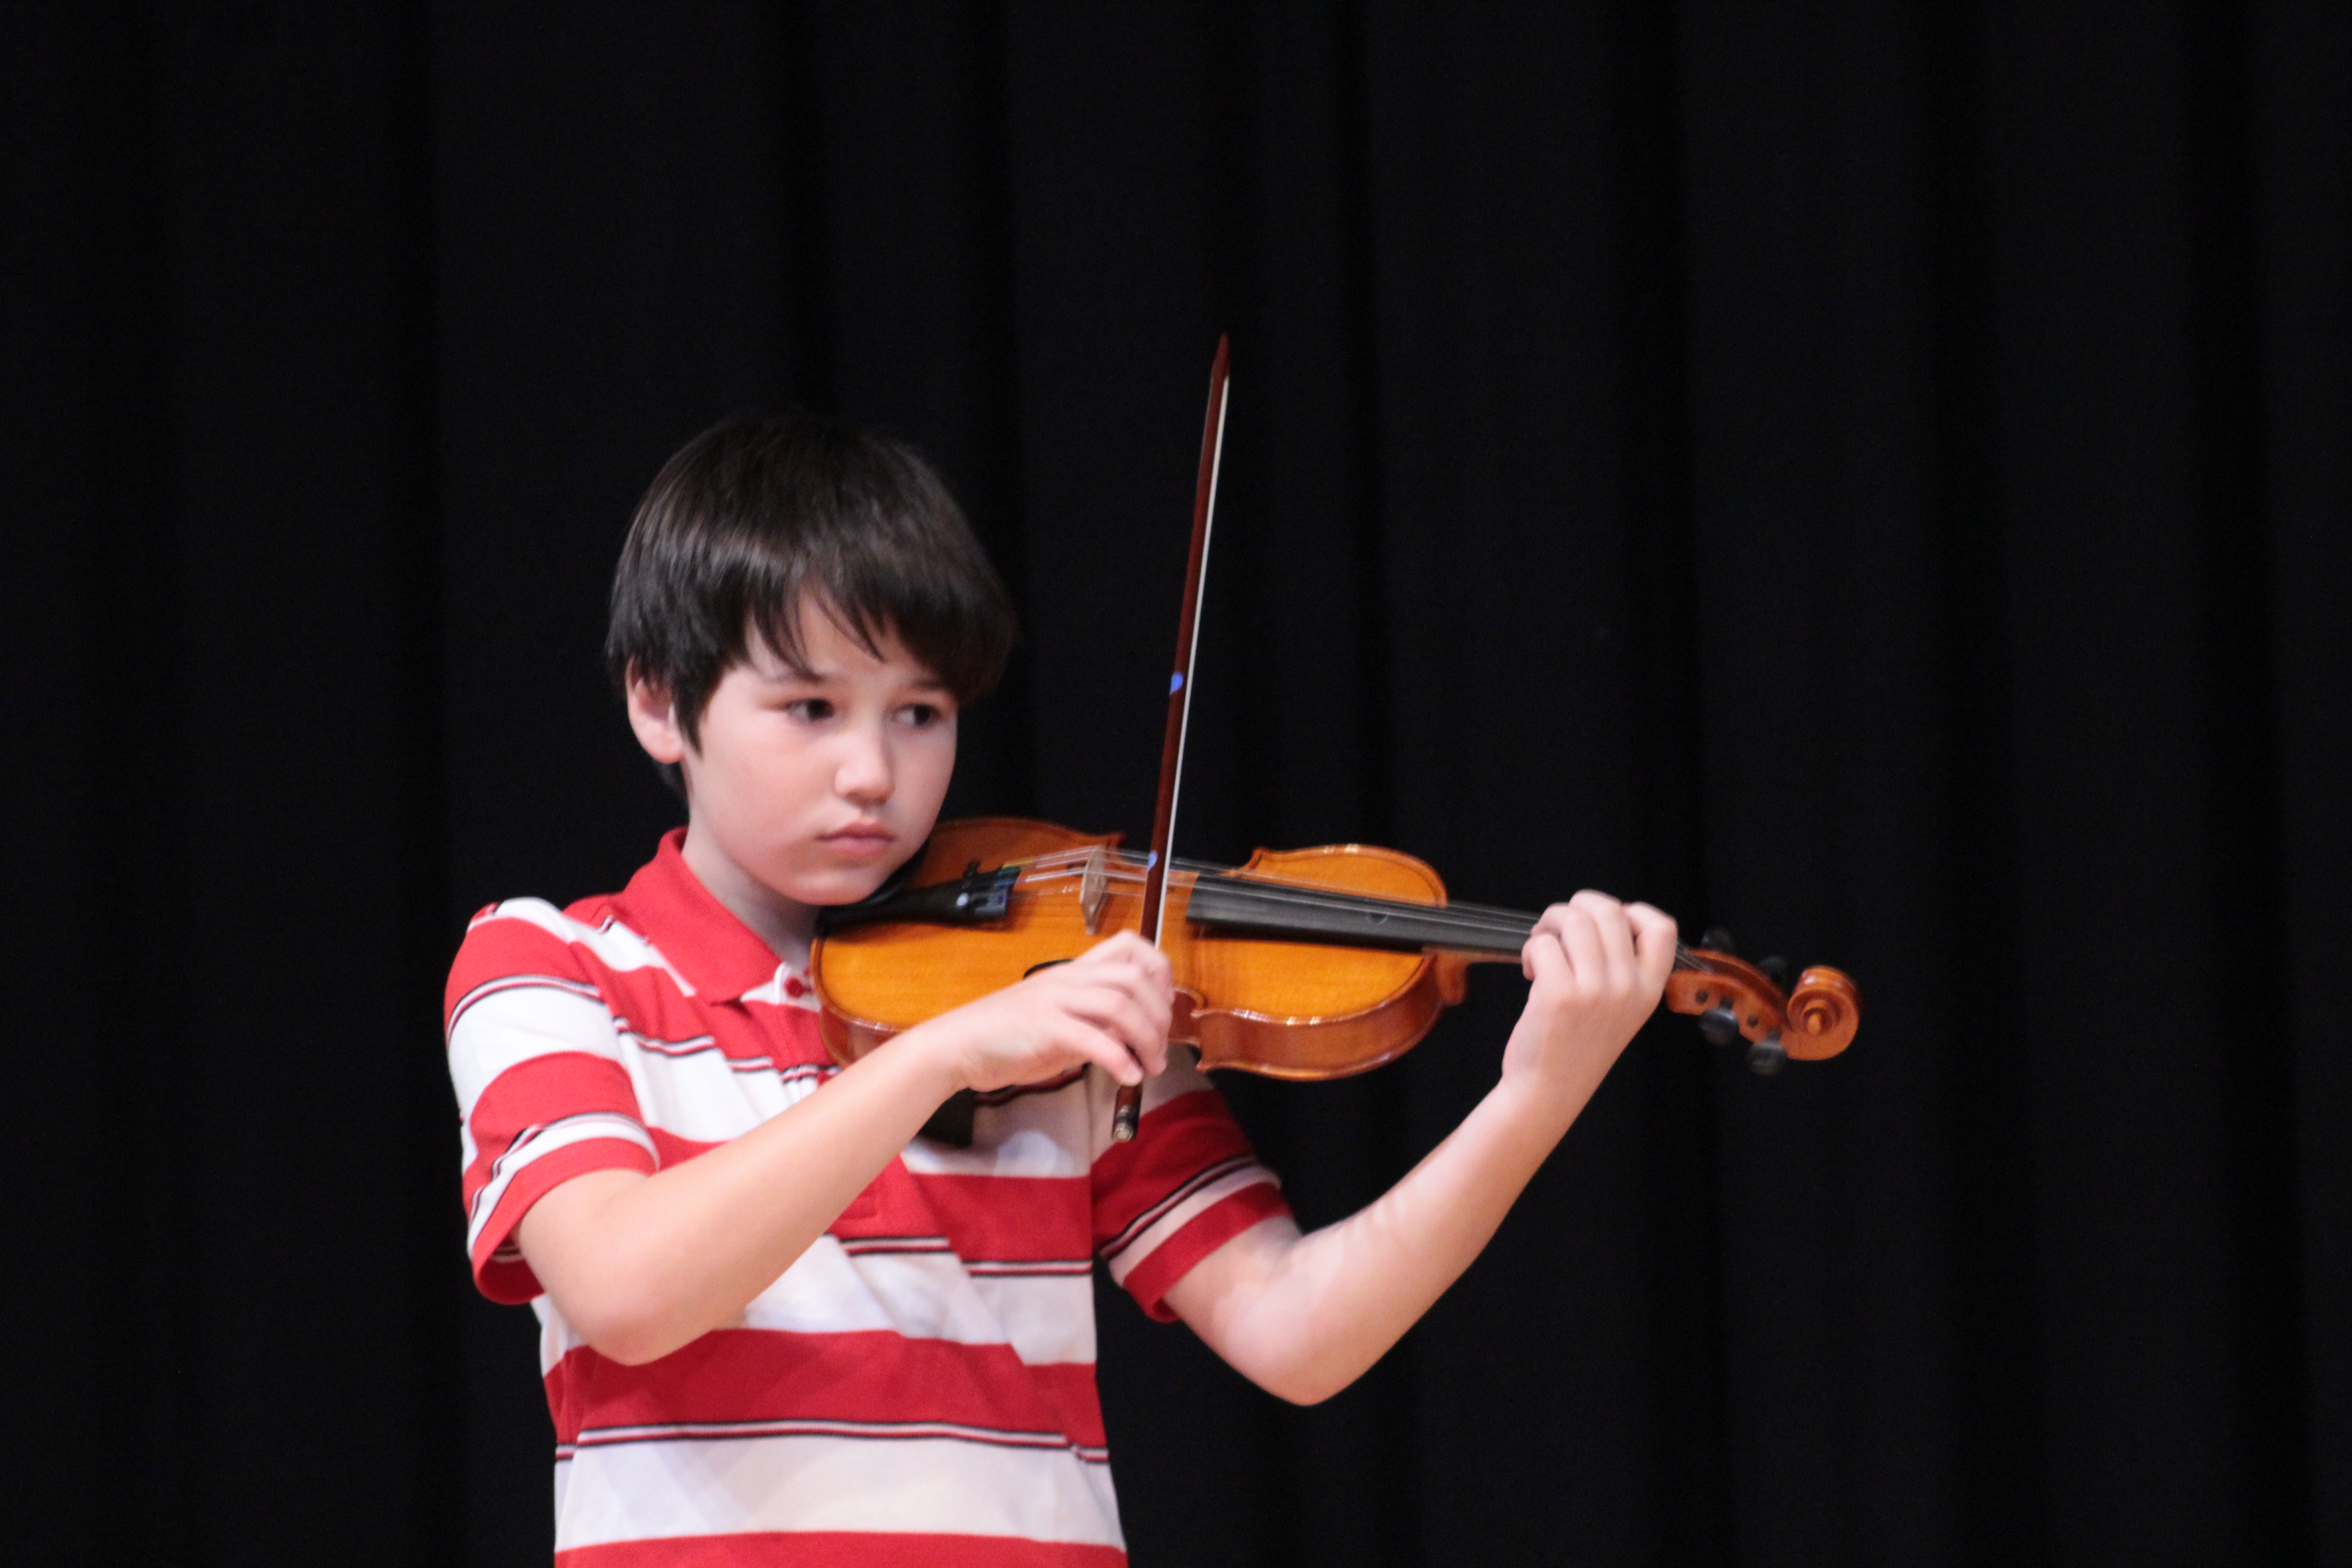 Adquirir una buena postura con el violín es fundamental para poder evolucionar técnica y musicalmente